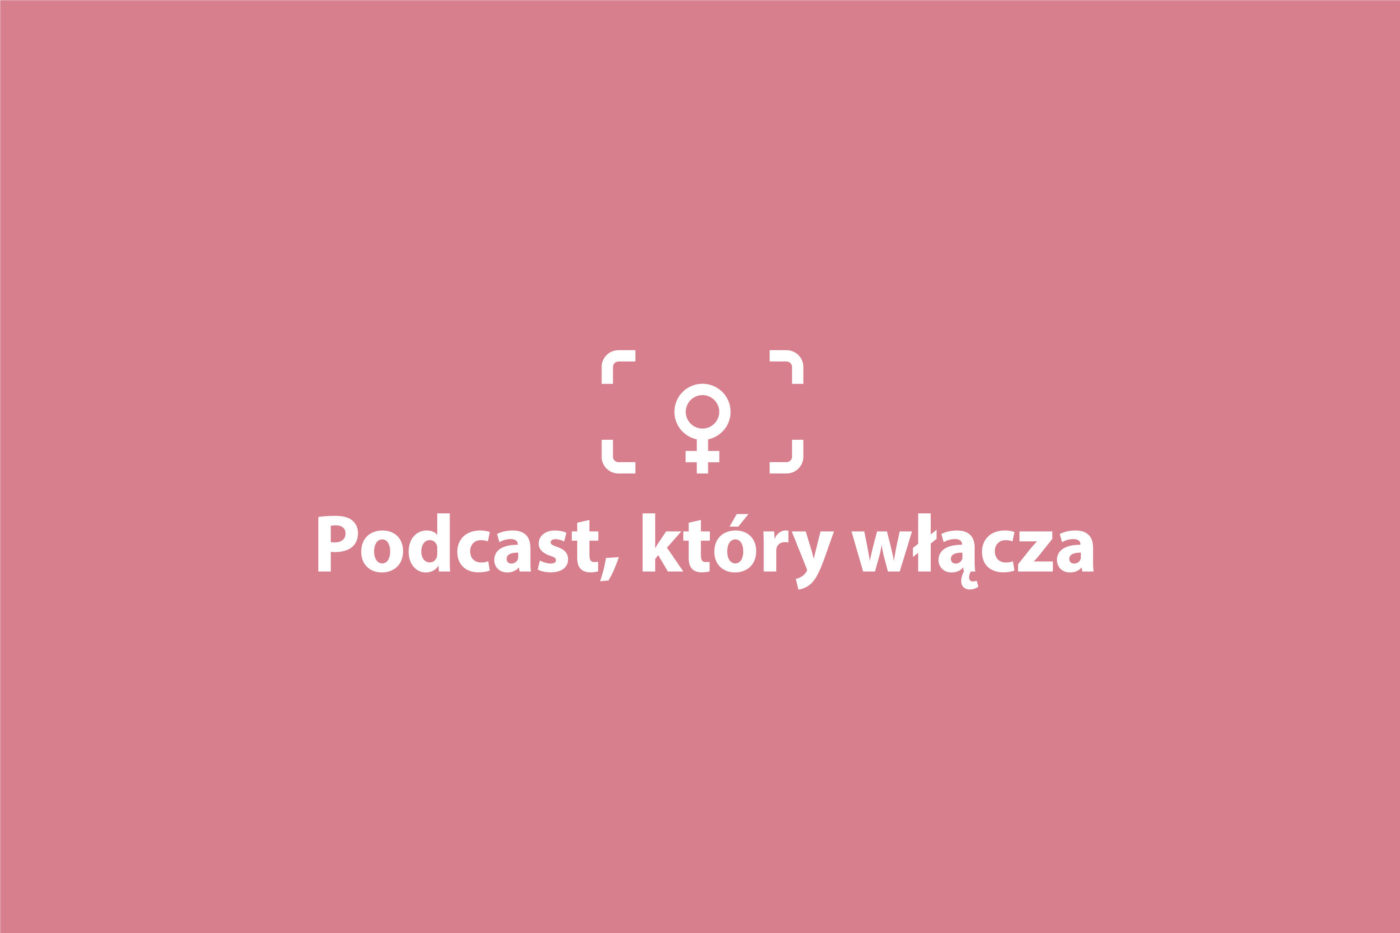 Podcast, który włącza